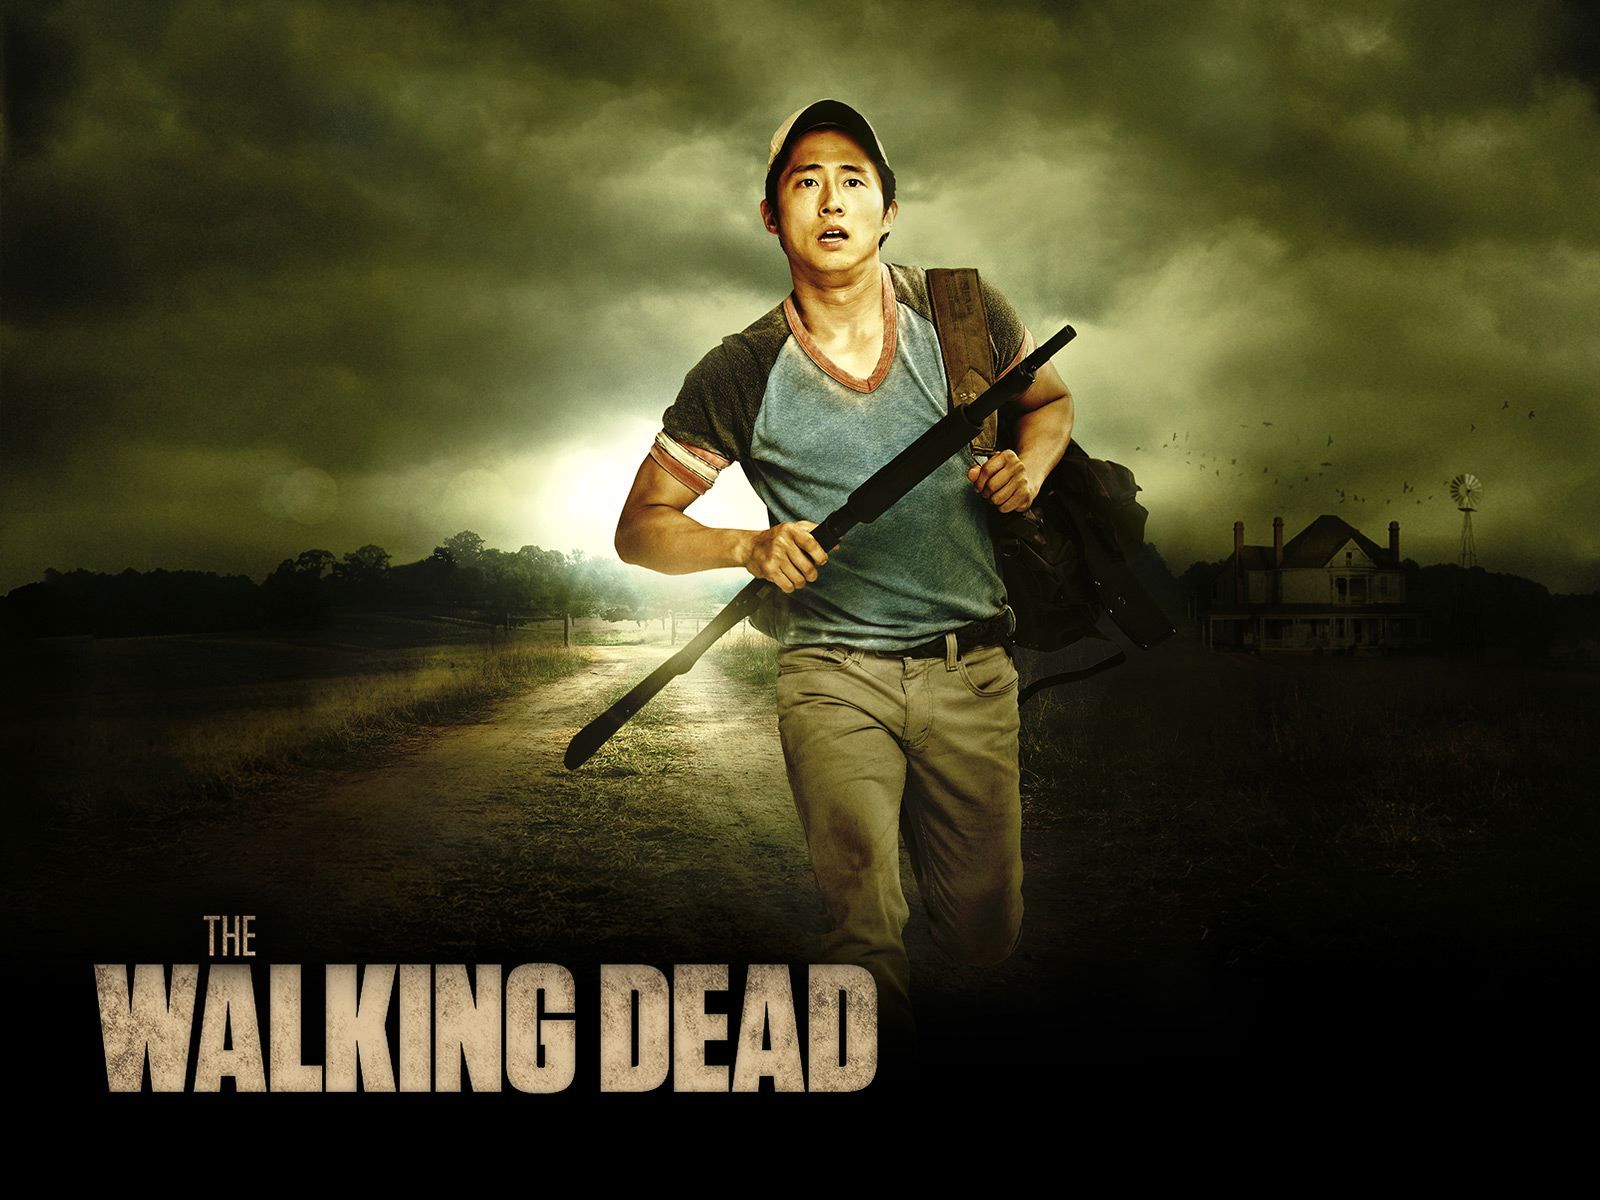 Wallpaper HD The Walking Dead “Glenn”. Maggie walking dead, The walking dead poster, Walking dead wallpaper